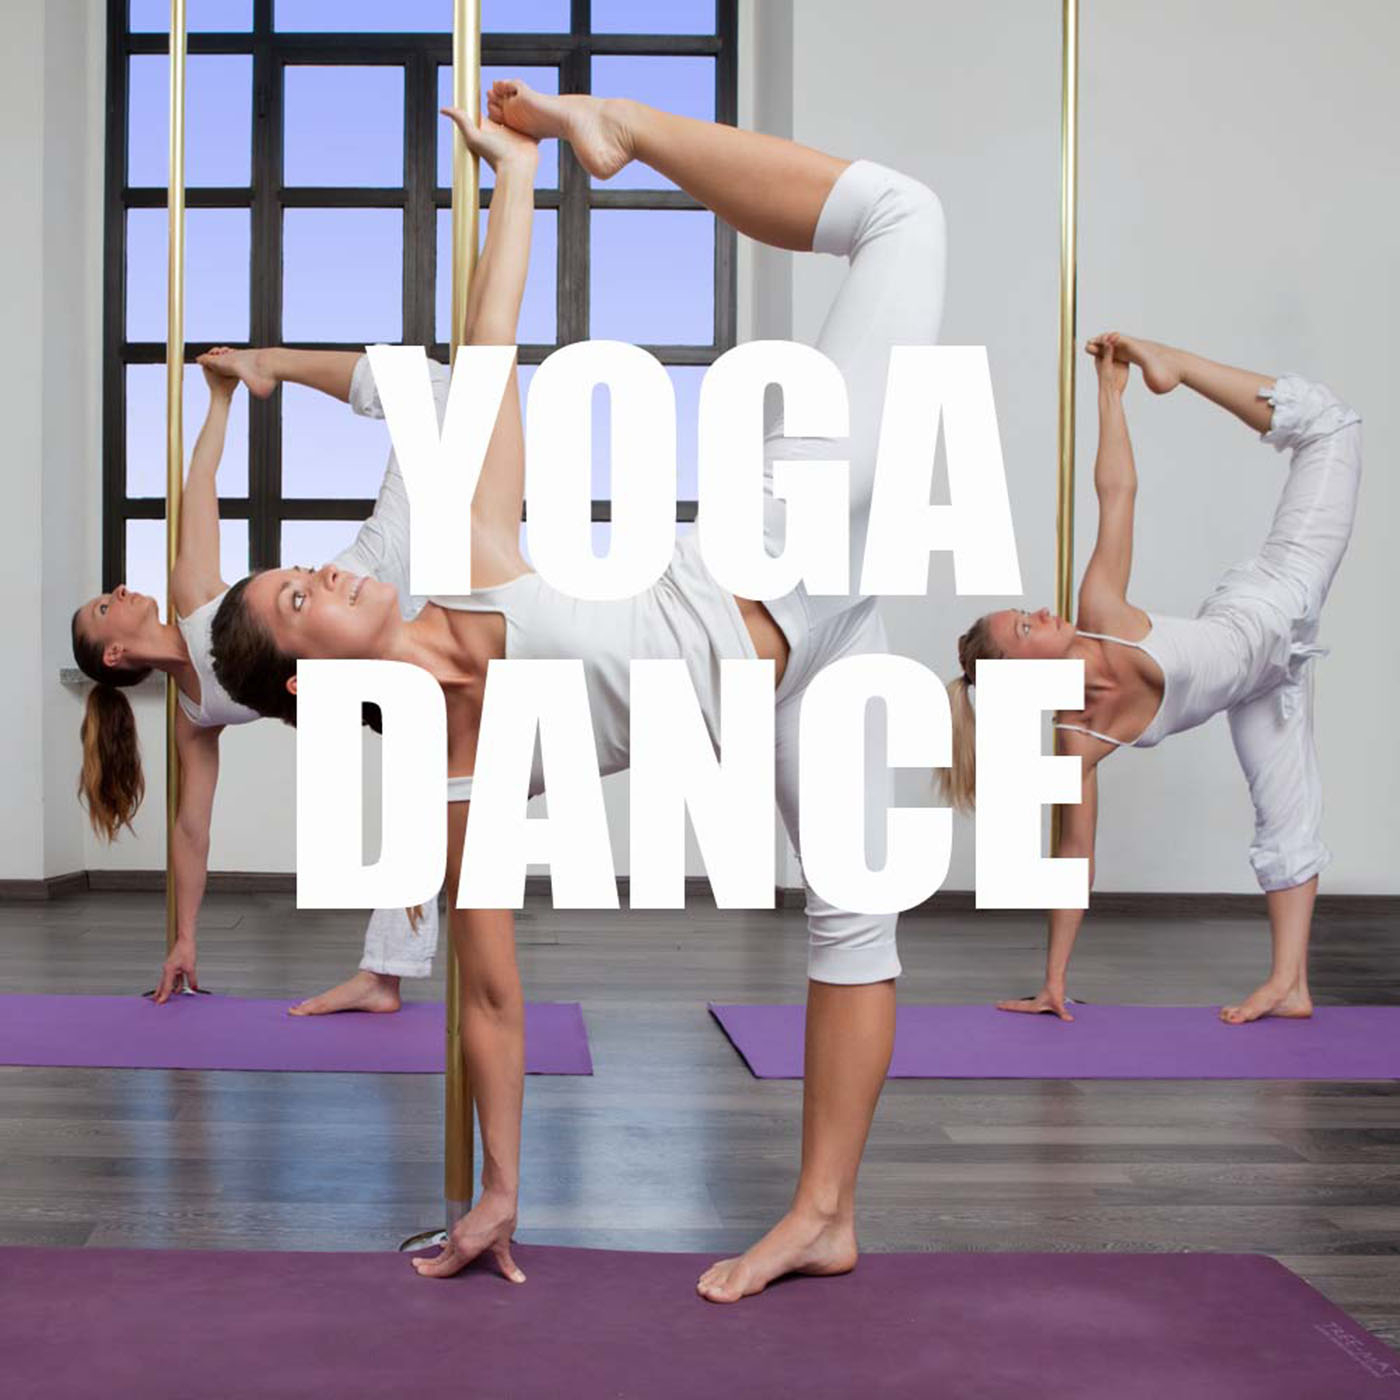 Yoga Dance - Musica para Ejercicios de Yoga, Yoga y Pilates, Chill Out y Musica Araba, Musica Etnica